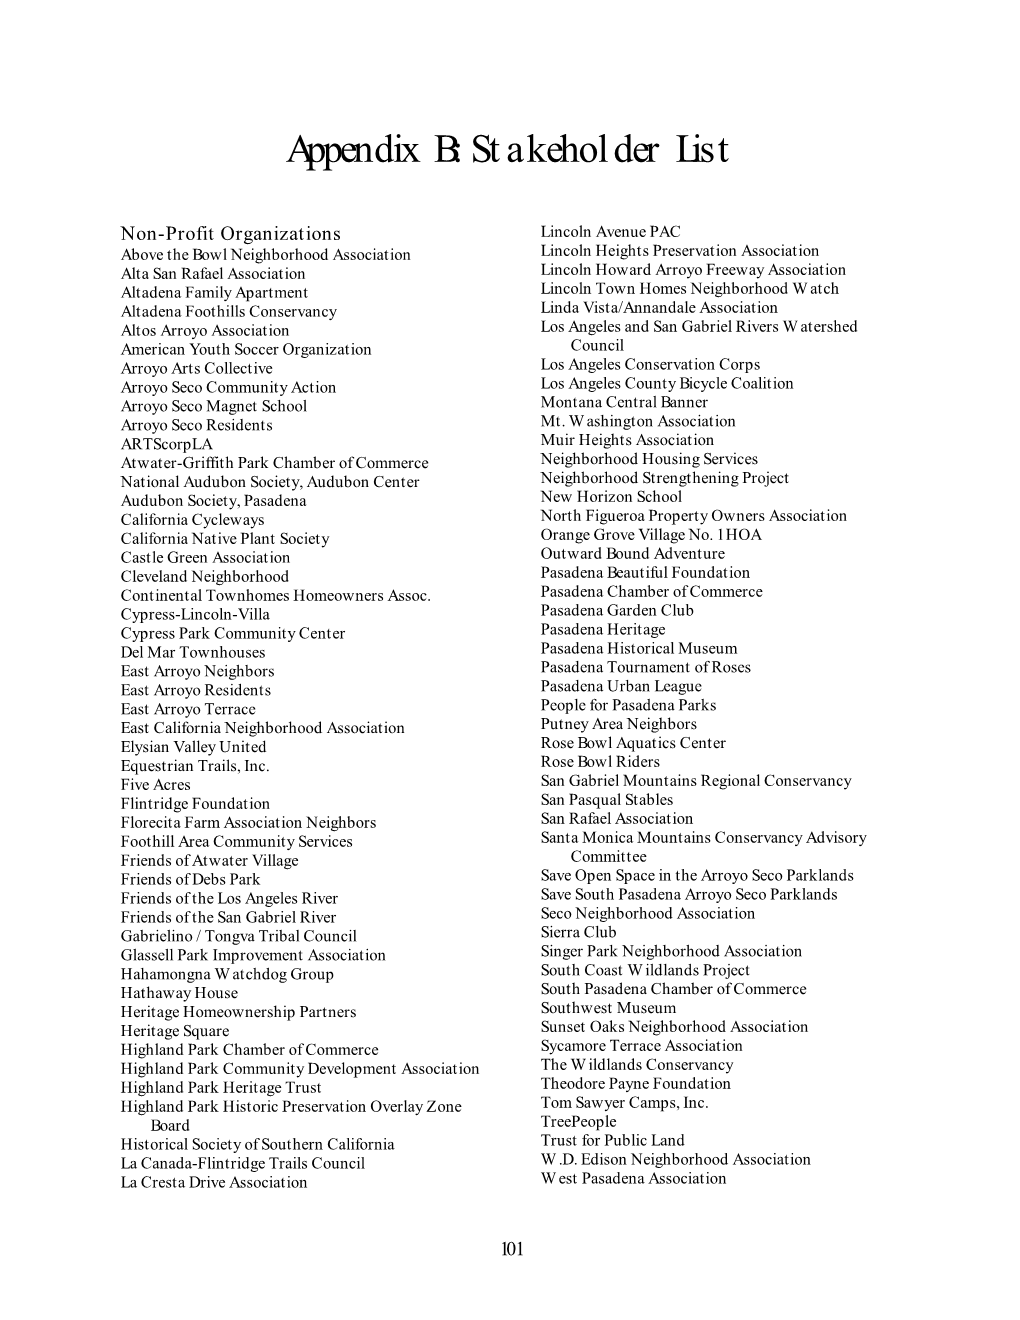 Stakeholder List